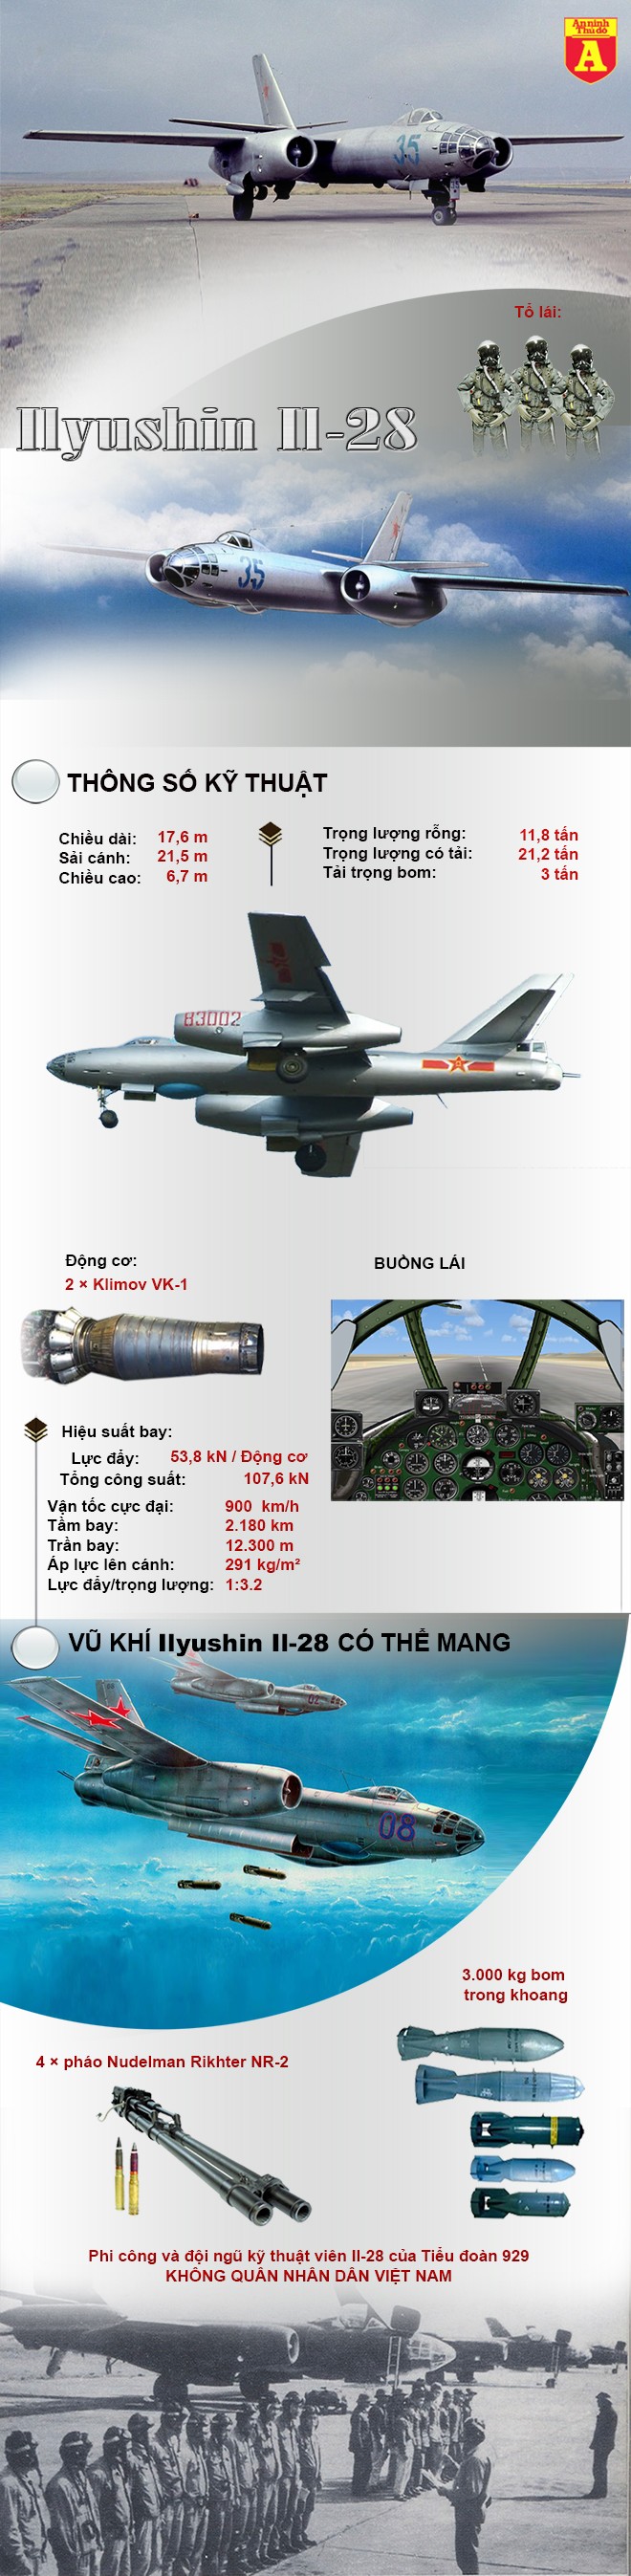 [Info] Bất ngờ với máy bay ném bom duy nhất của không quân Việt Nam ảnh 2